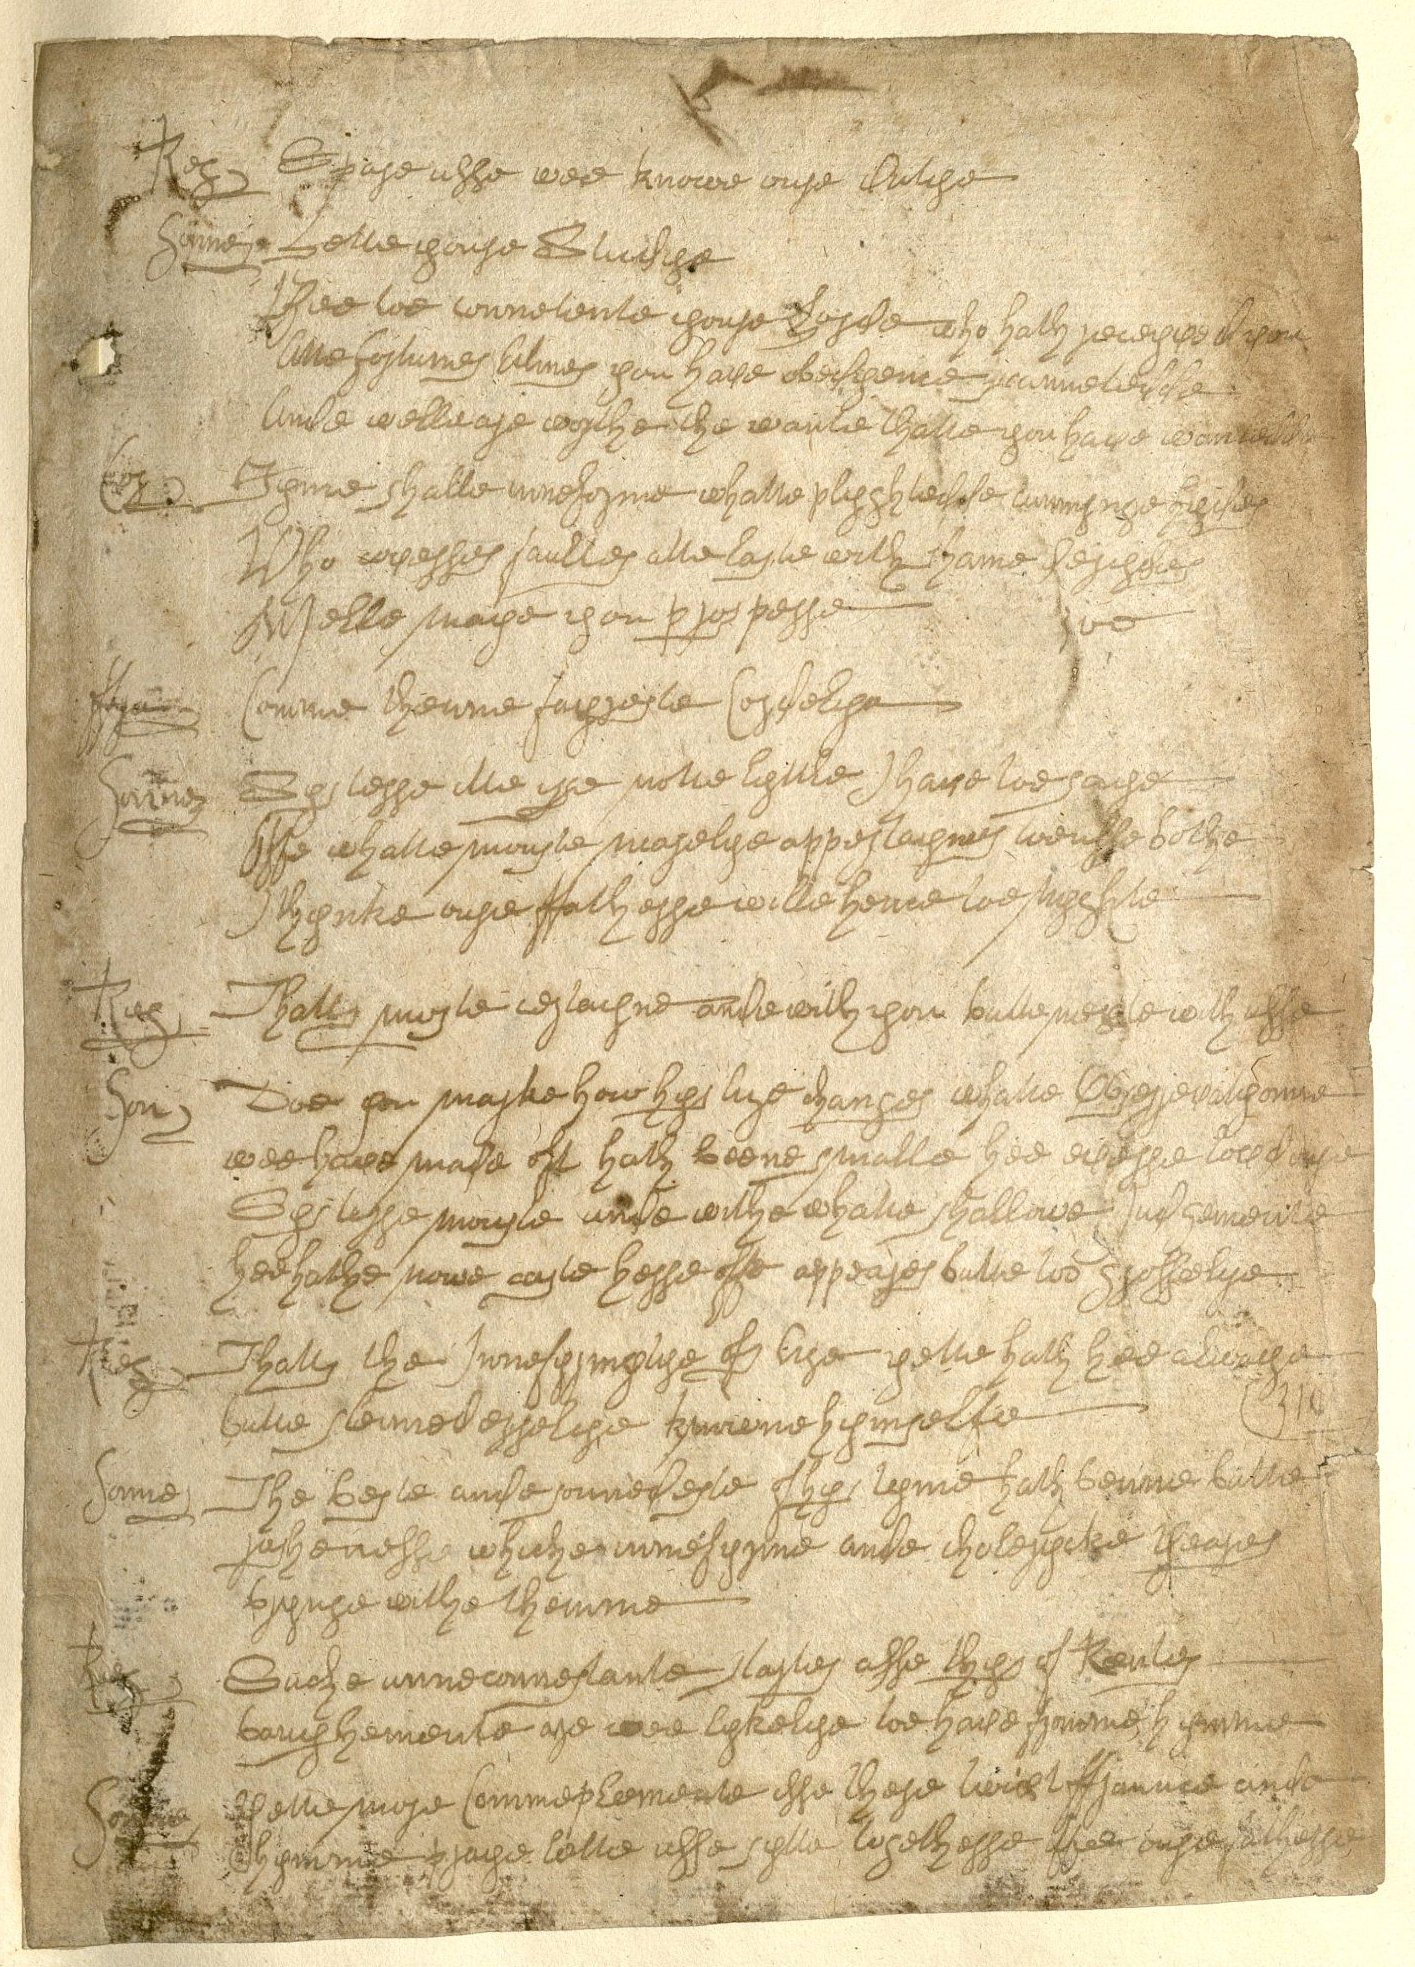 Рукописи «шекспировских подделок» Уильяма Генри Айрленда — отрывок из «Короля Лира», якобы написанный почерком Шекспира